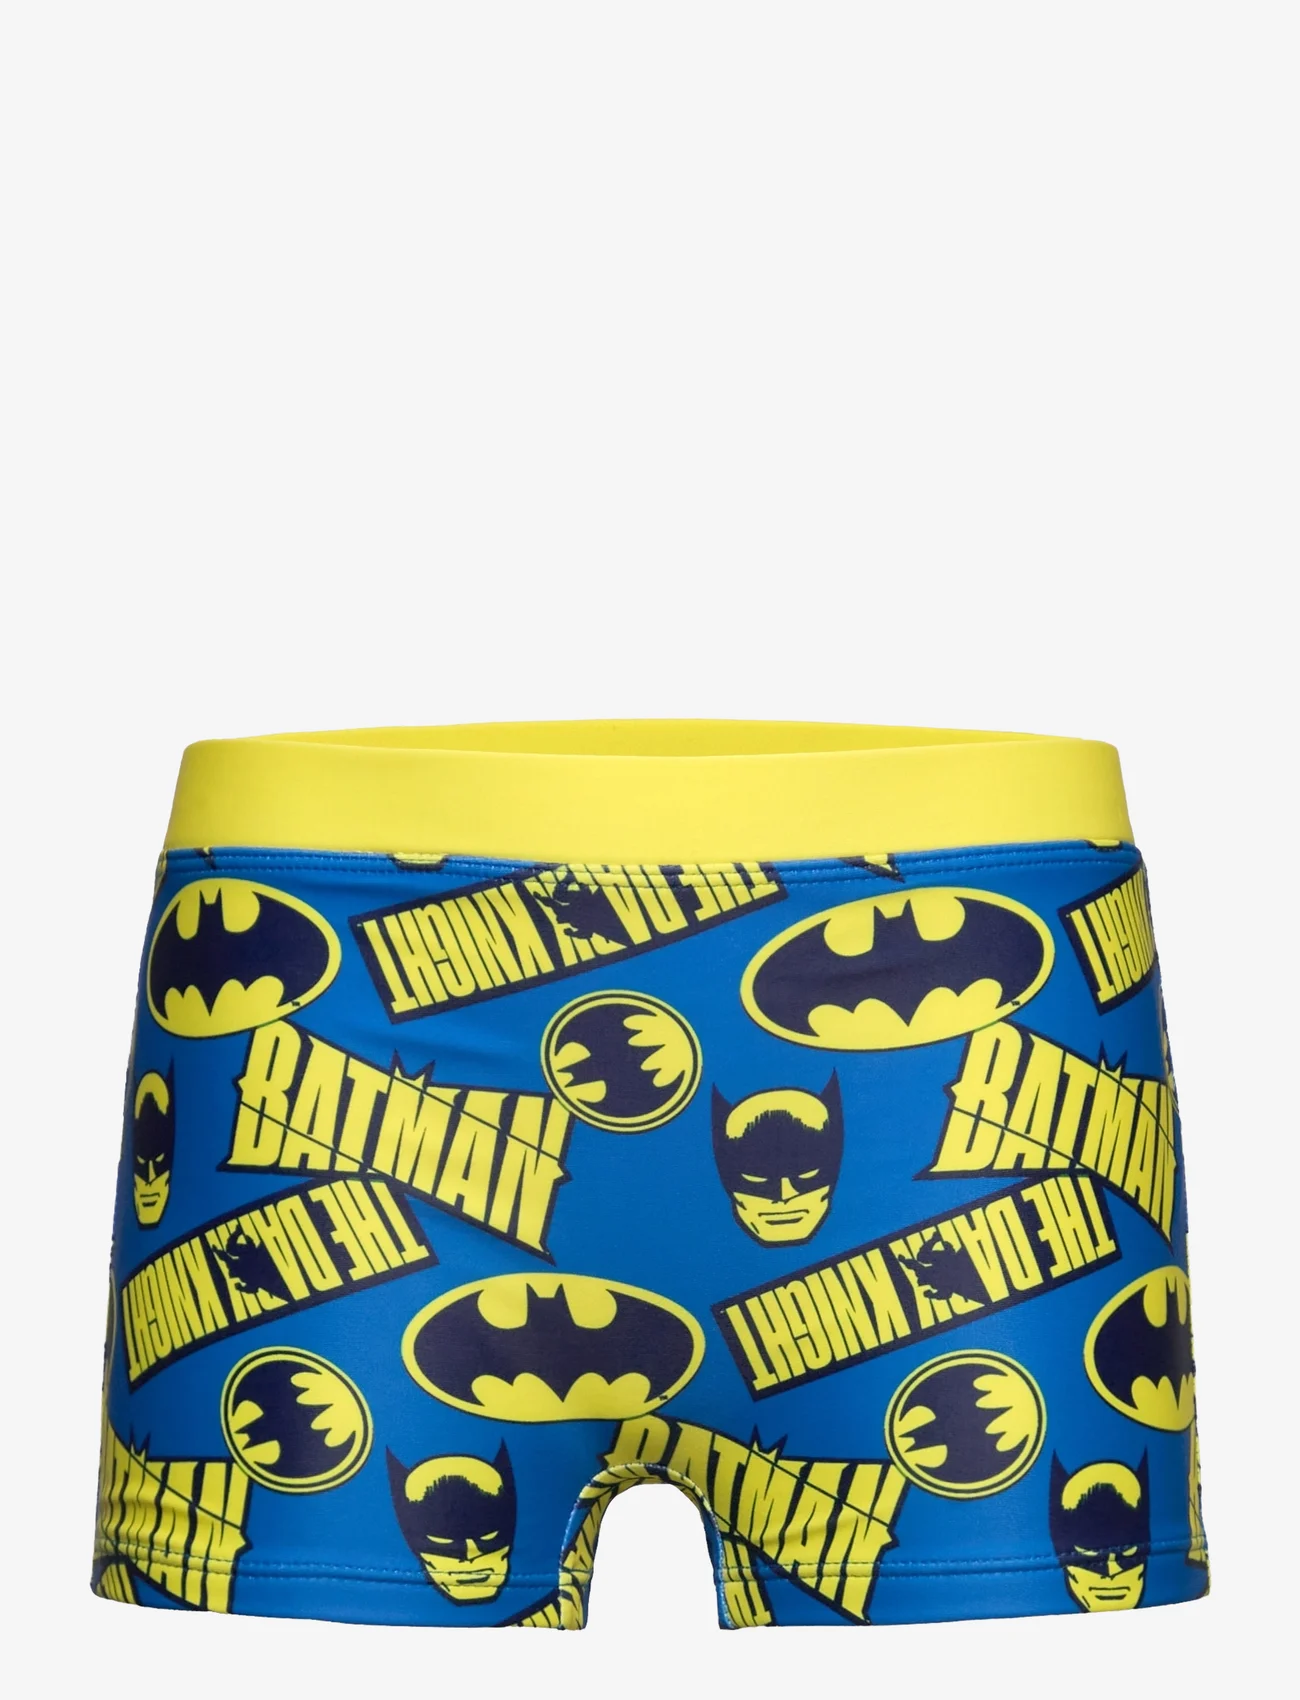 Batman - Board short swimwear - underpants - yellow - 0